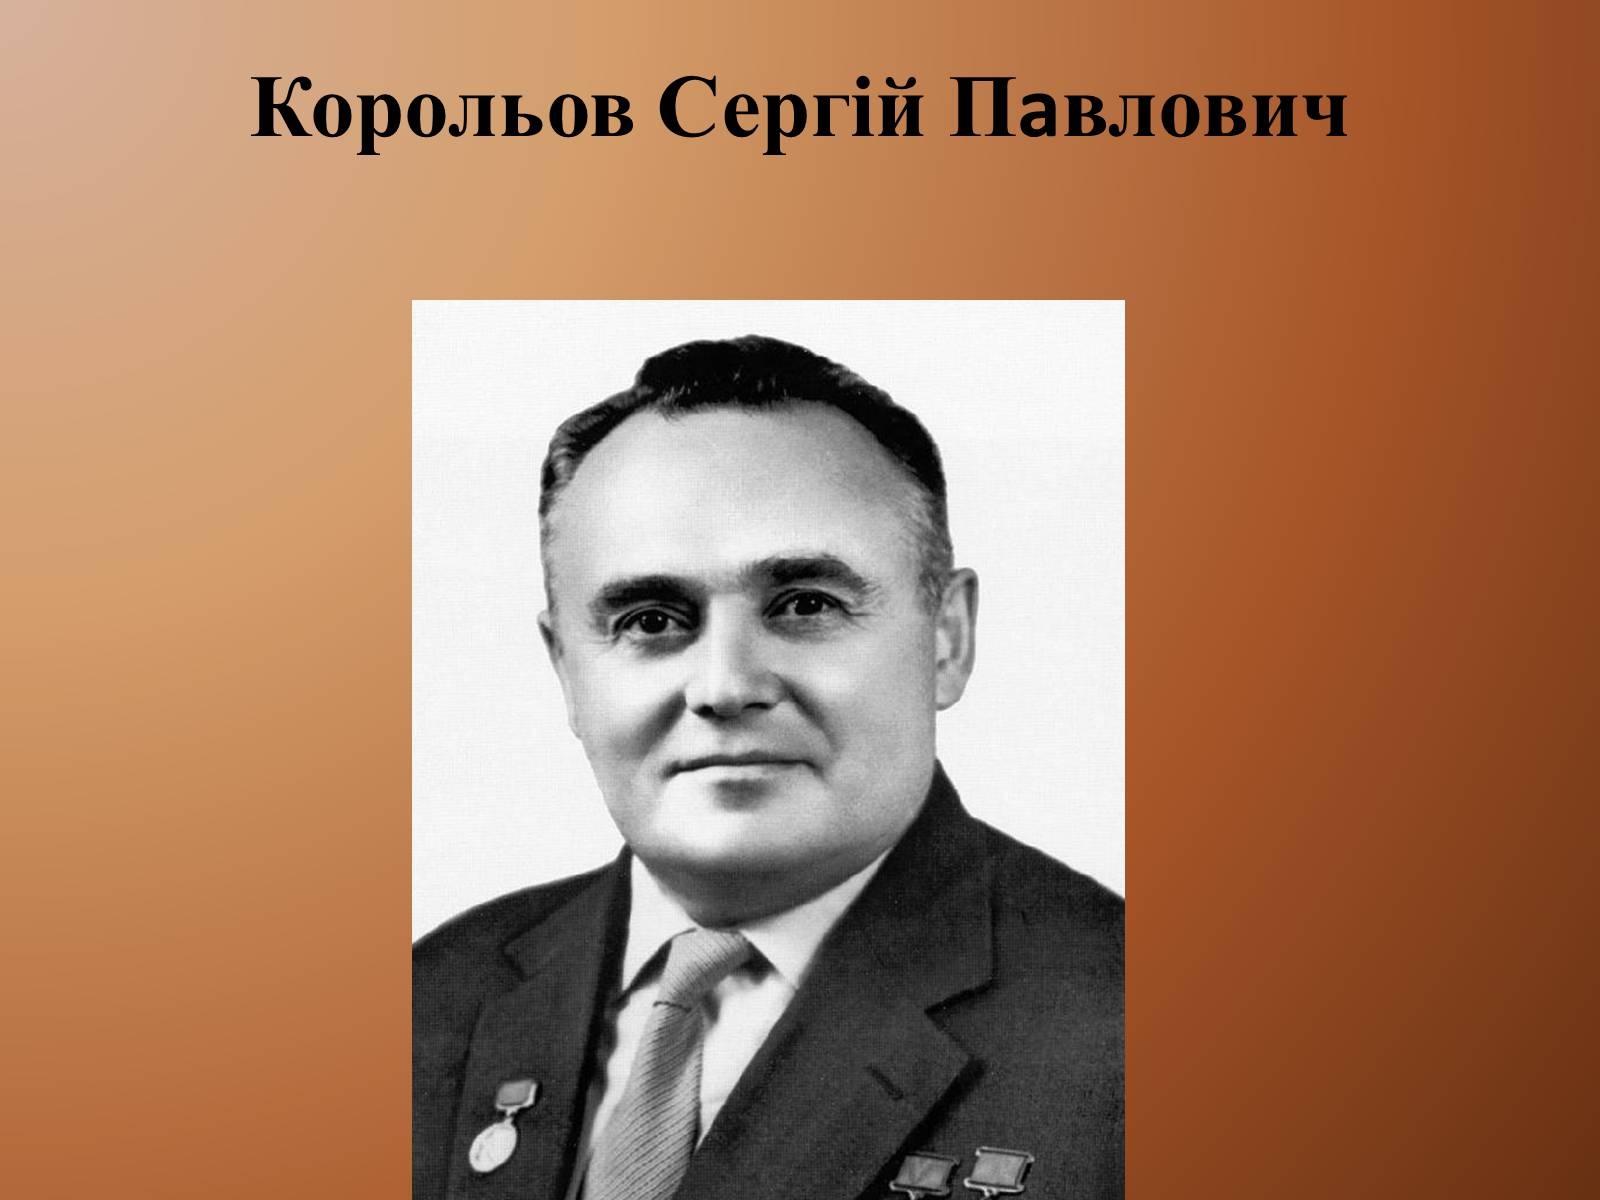 Сергей Павлович Королев портрет